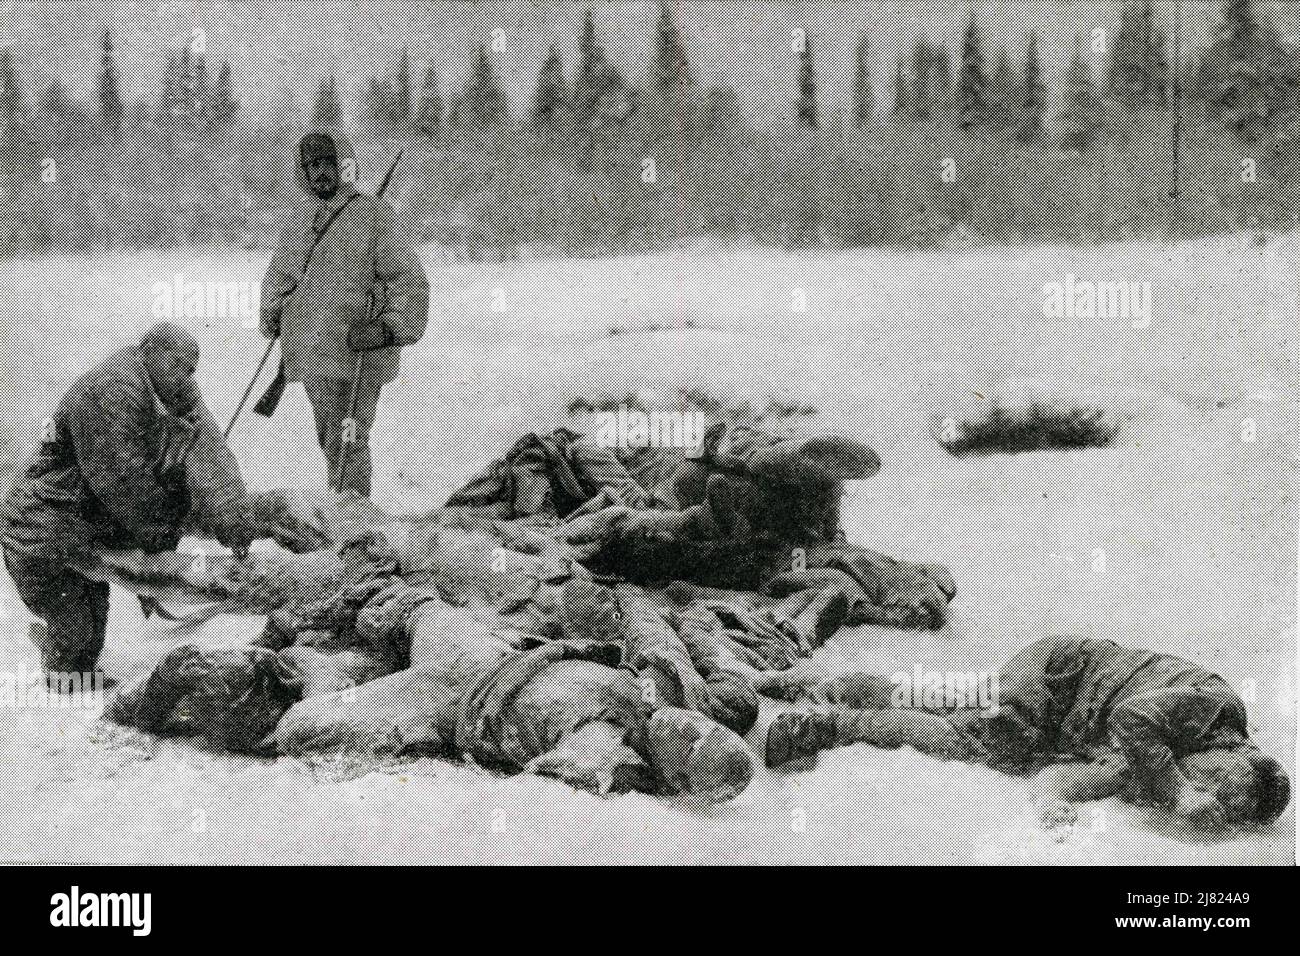 Sul fronte settentrionale finlandese nella guerra russo-finish - corpi russi congelati giacenti sul terreno illustrano il terribile freddo in cui gli eserciti avversari hanno dovuto combattere. Finlandia, Europa, datata 31 dicembre 1939. Foto Stock